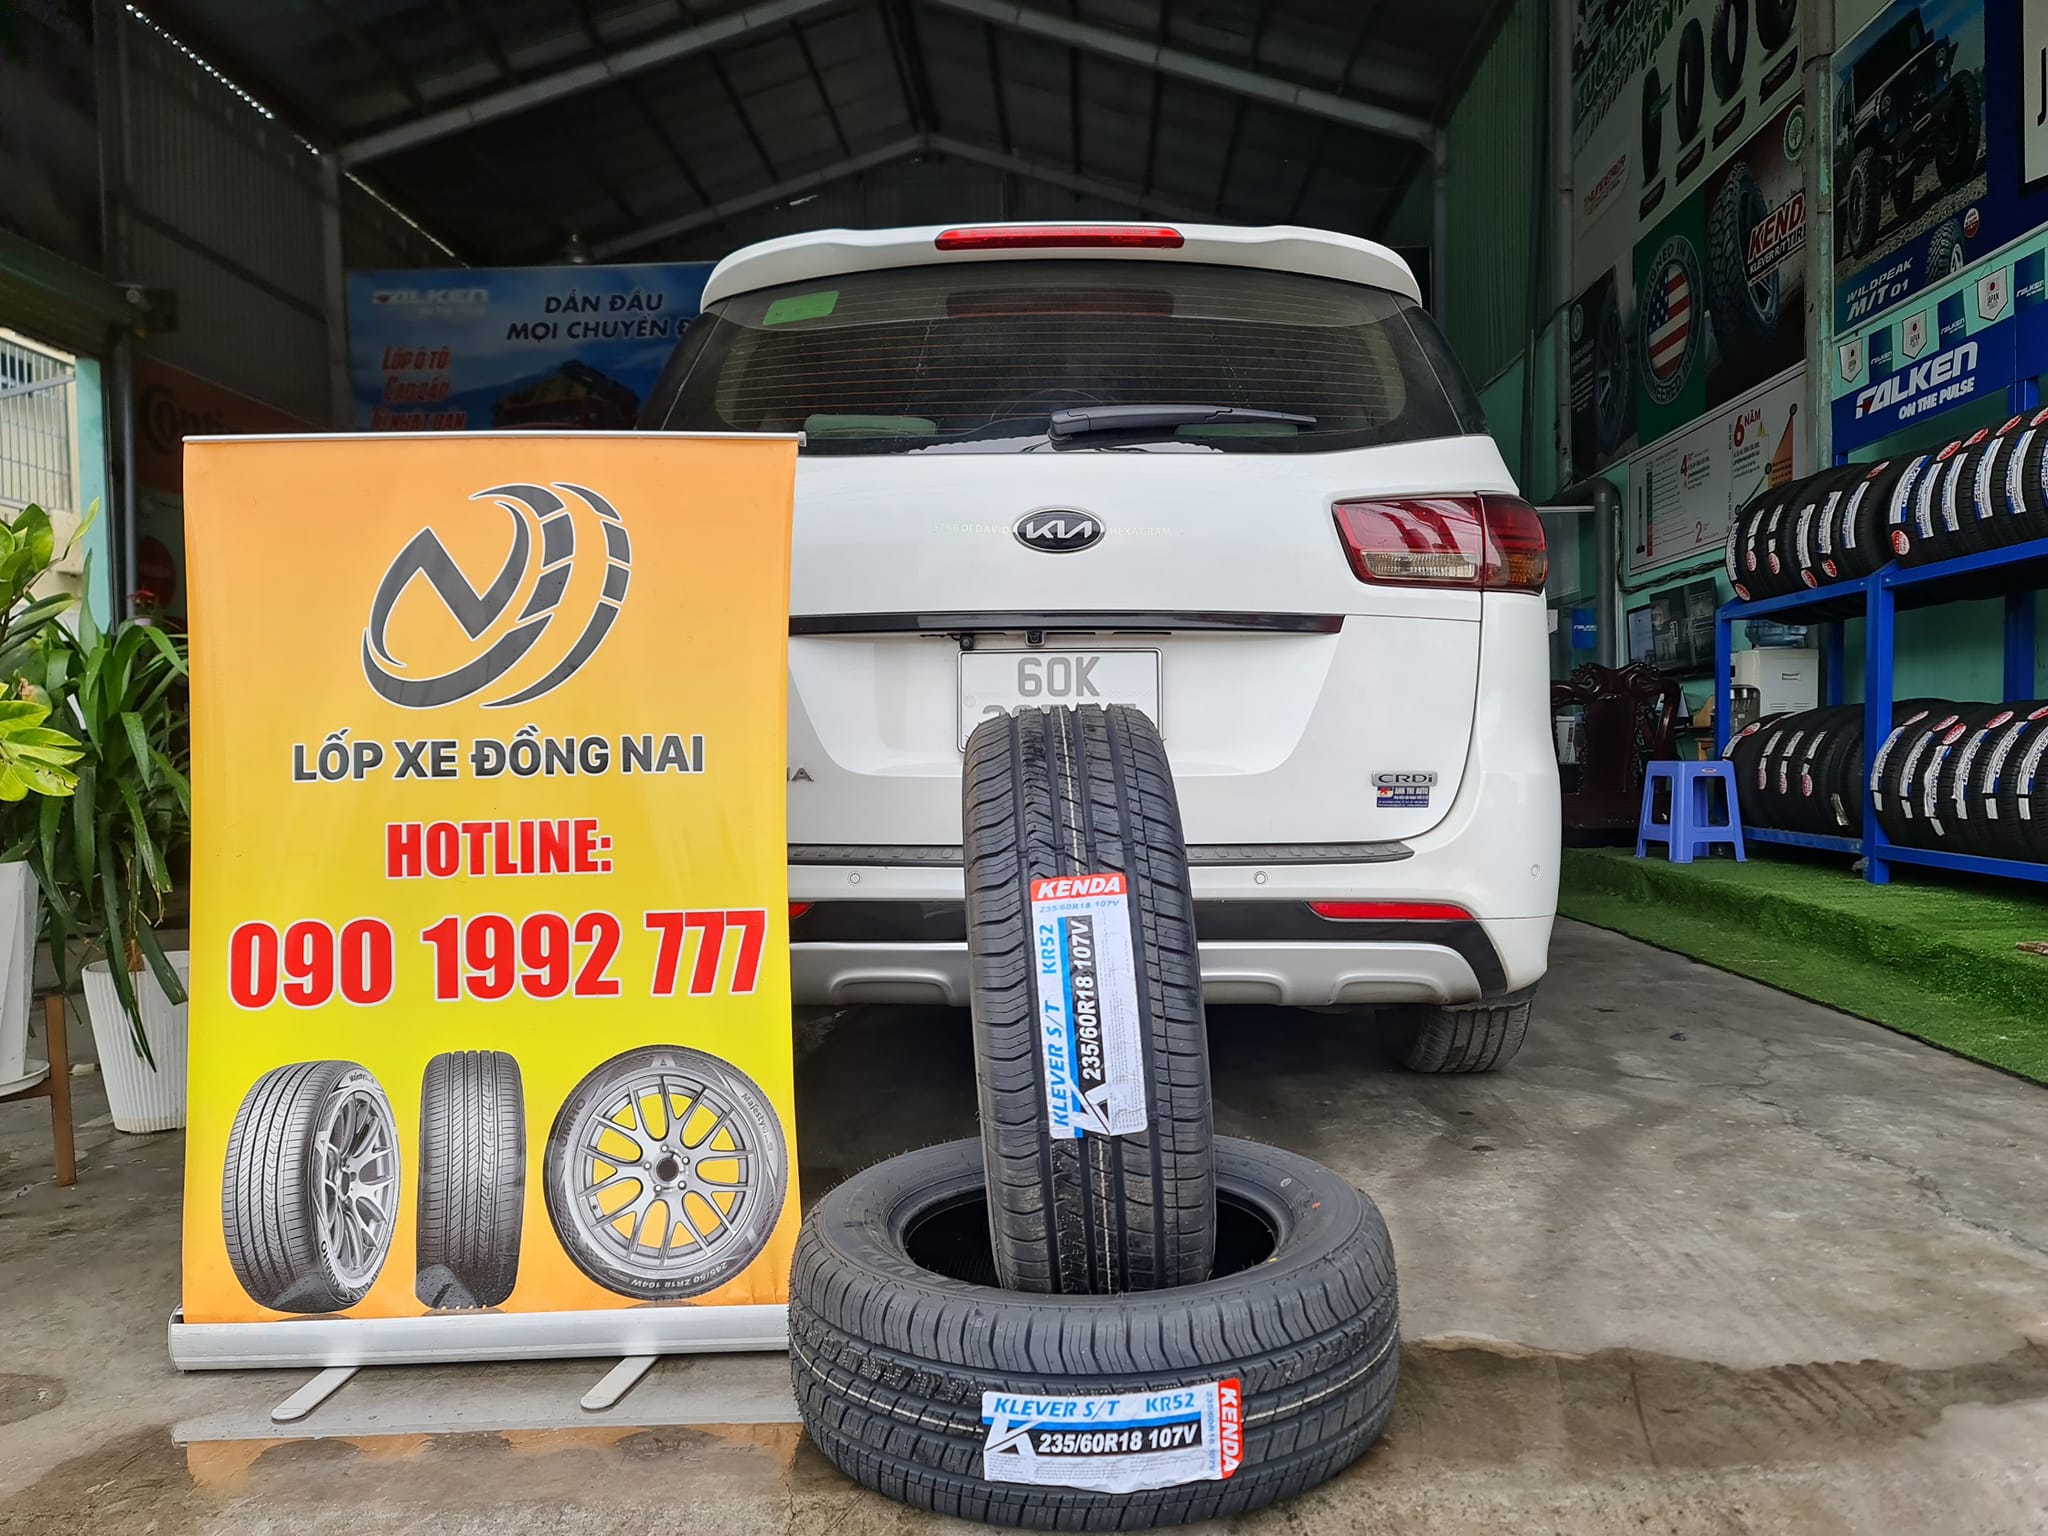 TƯ VẤN : Thay lốp xe Kia Sedona ở Trảng Bom, Đồng Nai.